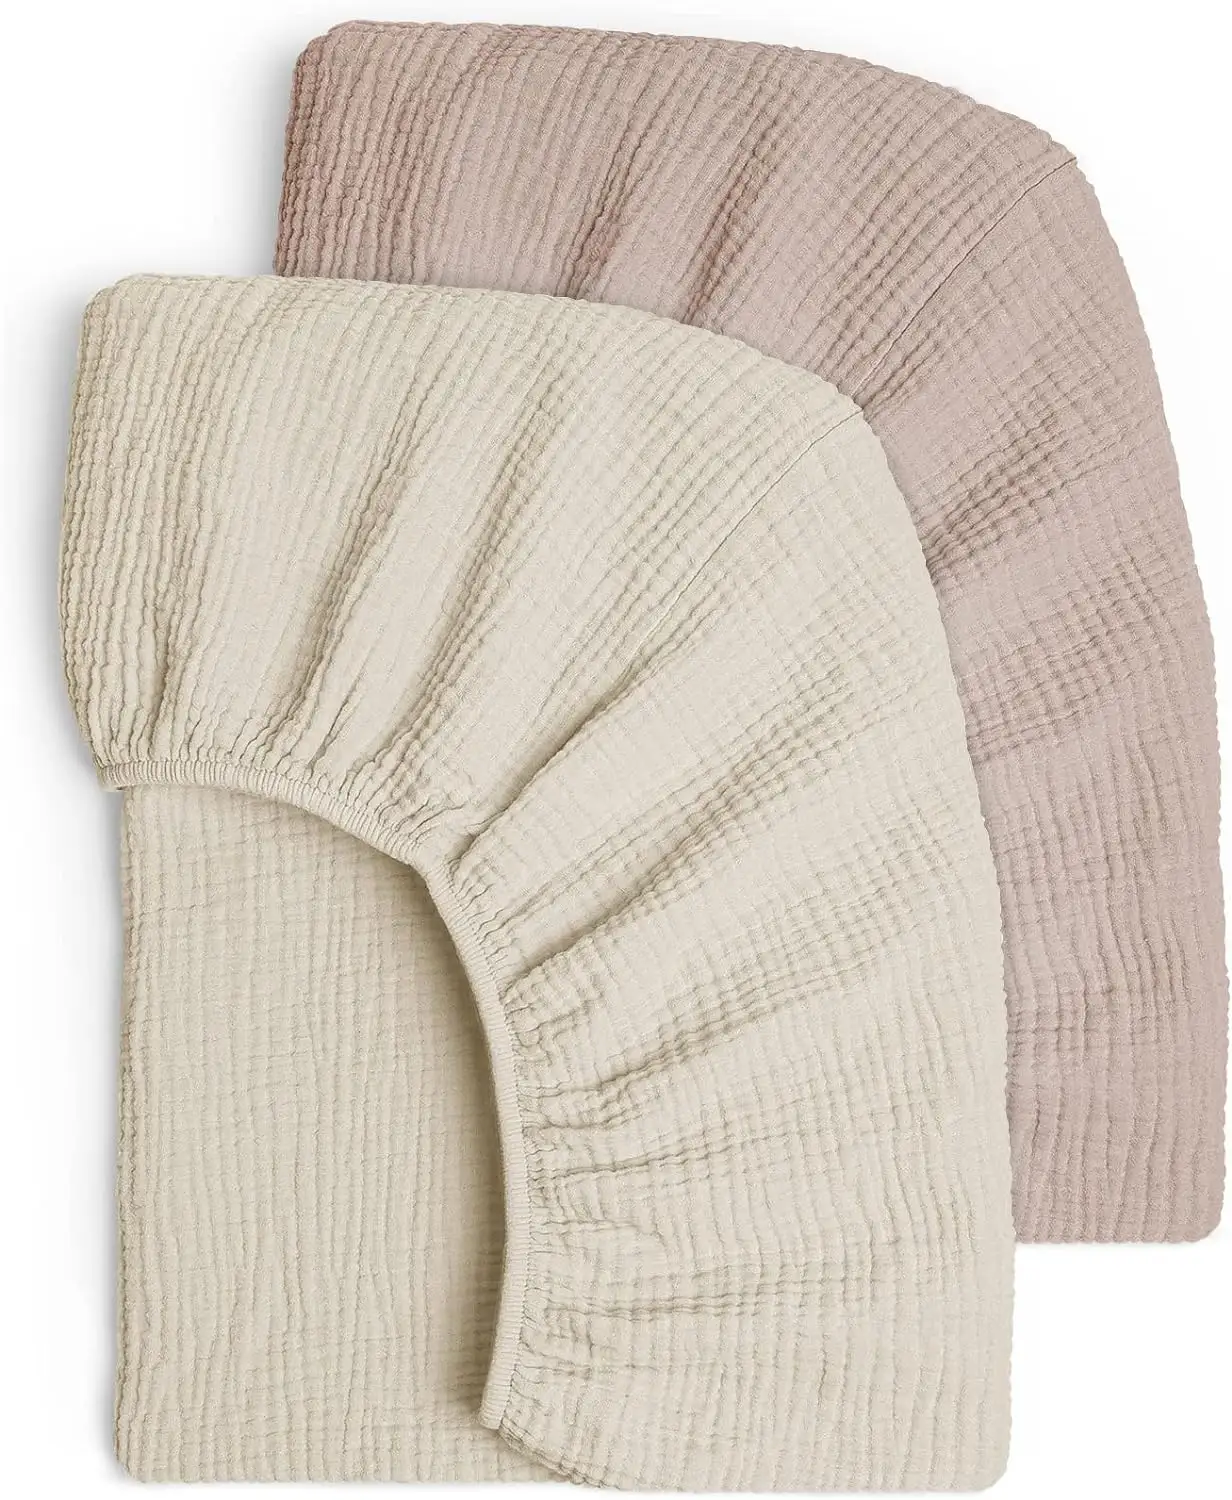 CPC estoque de lençóis descartáveis para berço de bebês, colchão de algodão e microfibra de bambu orgânico, acessório de fixação